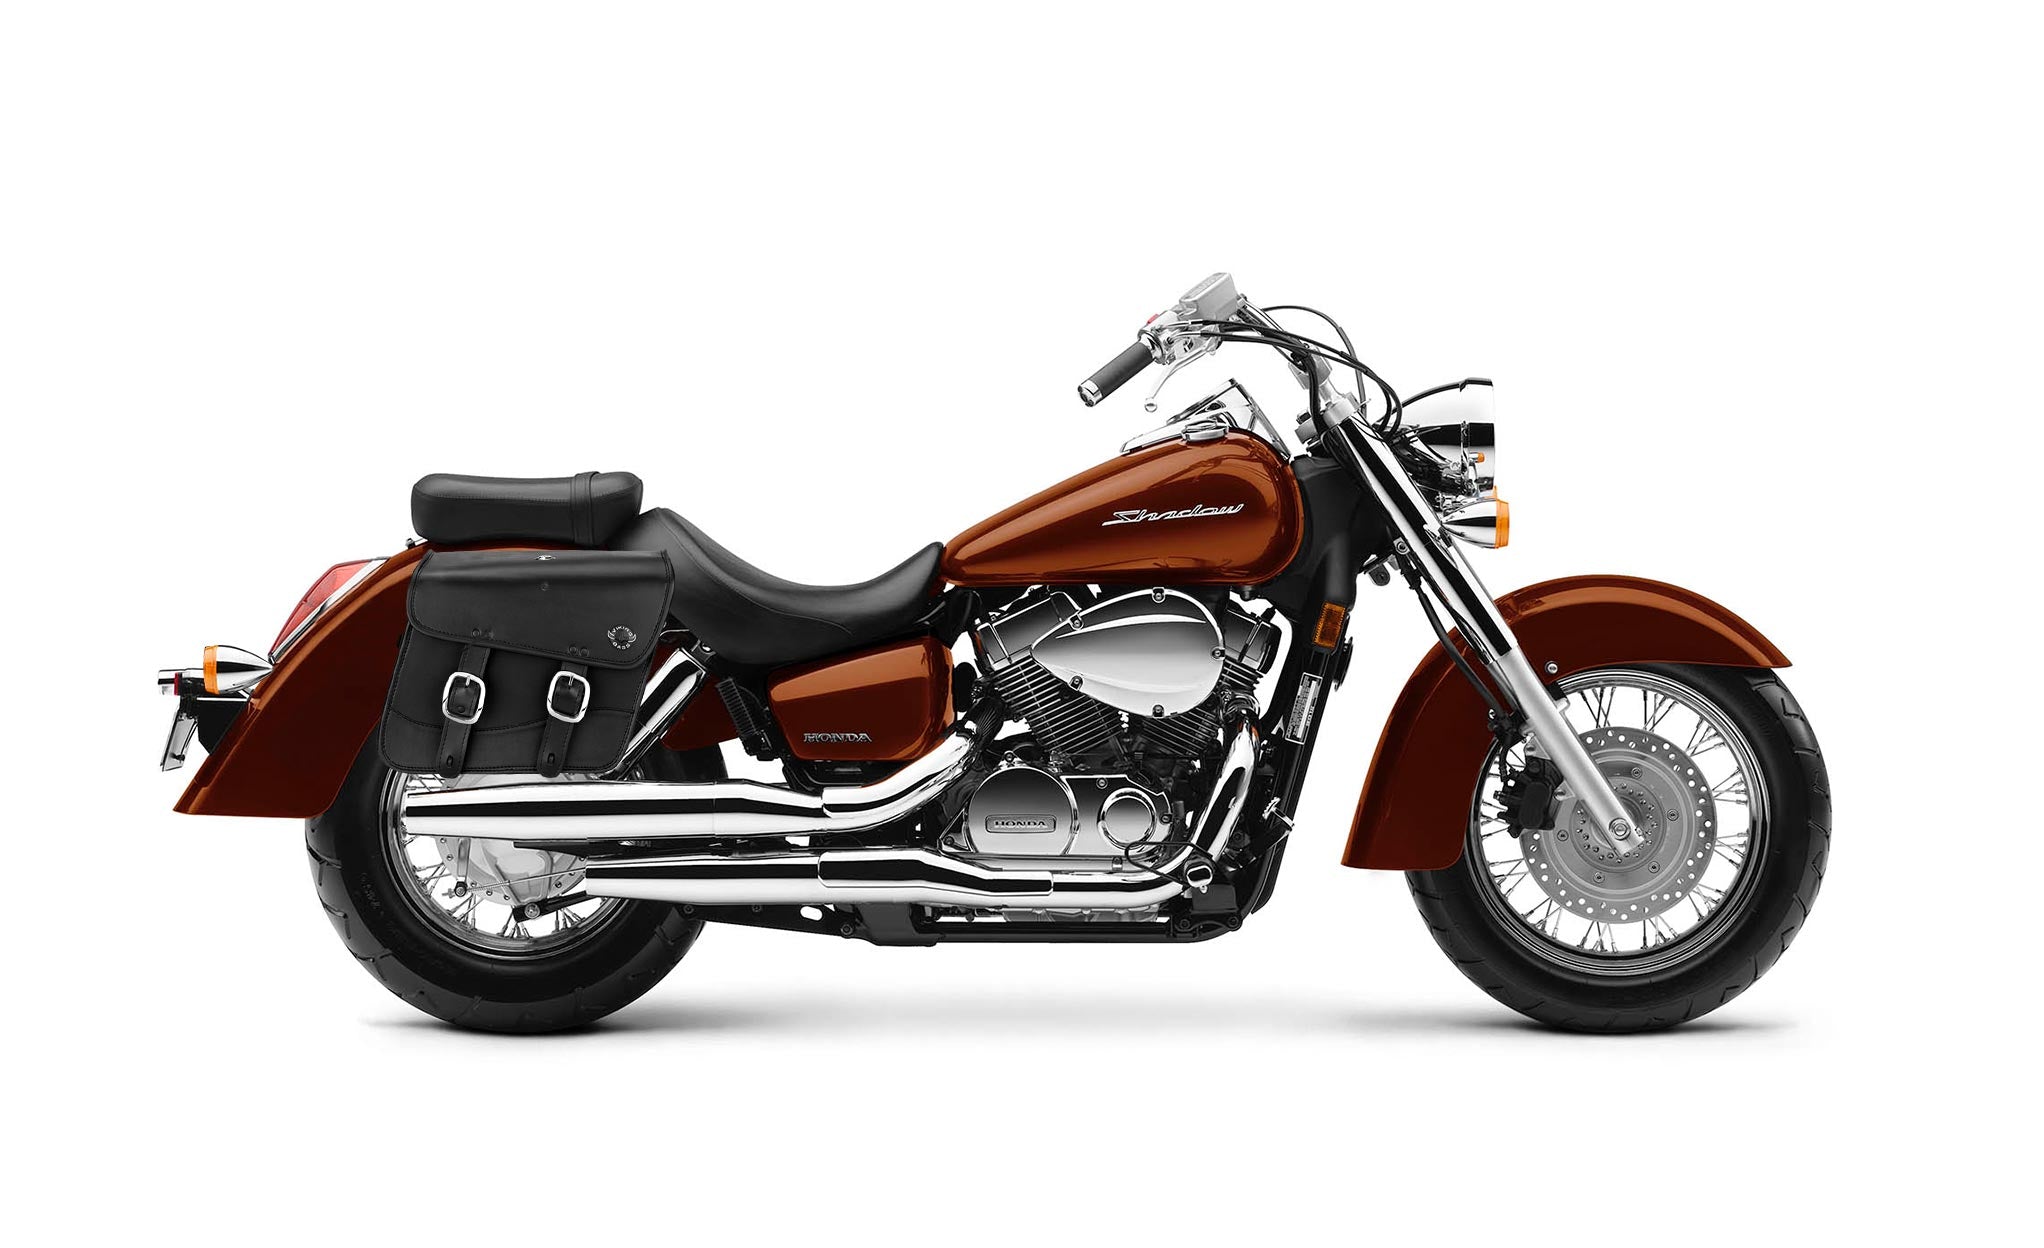 Viking Thor Medium Honda Shadow 1100 Aero Leather Motorcycle Saddlebags on Bike Photo @expand